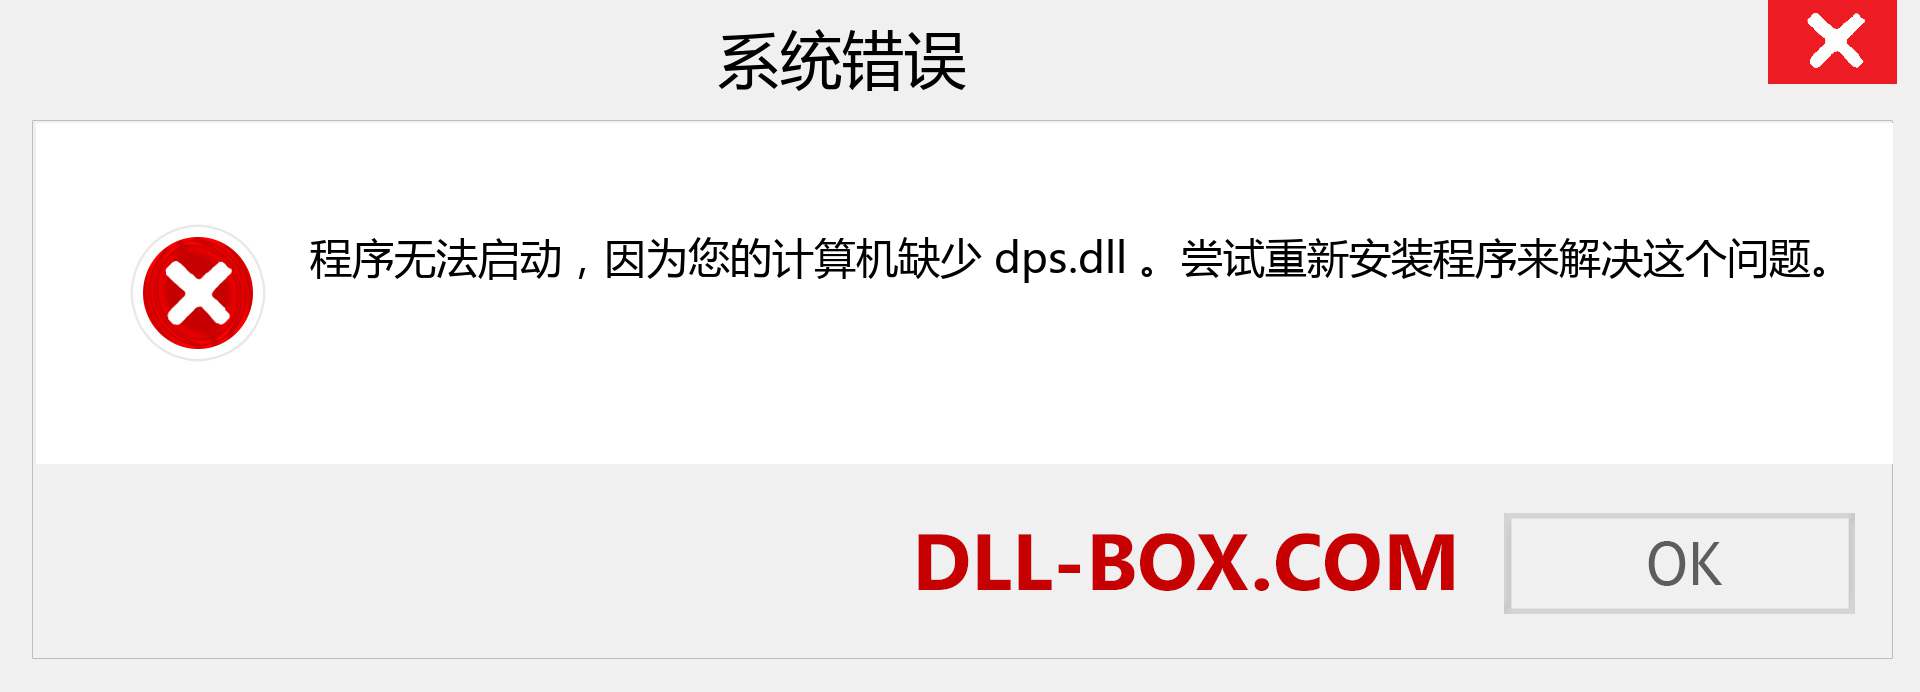 dps.dll 文件丢失？。 适用于 Windows 7、8、10 的下载 - 修复 Windows、照片、图像上的 dps dll 丢失错误